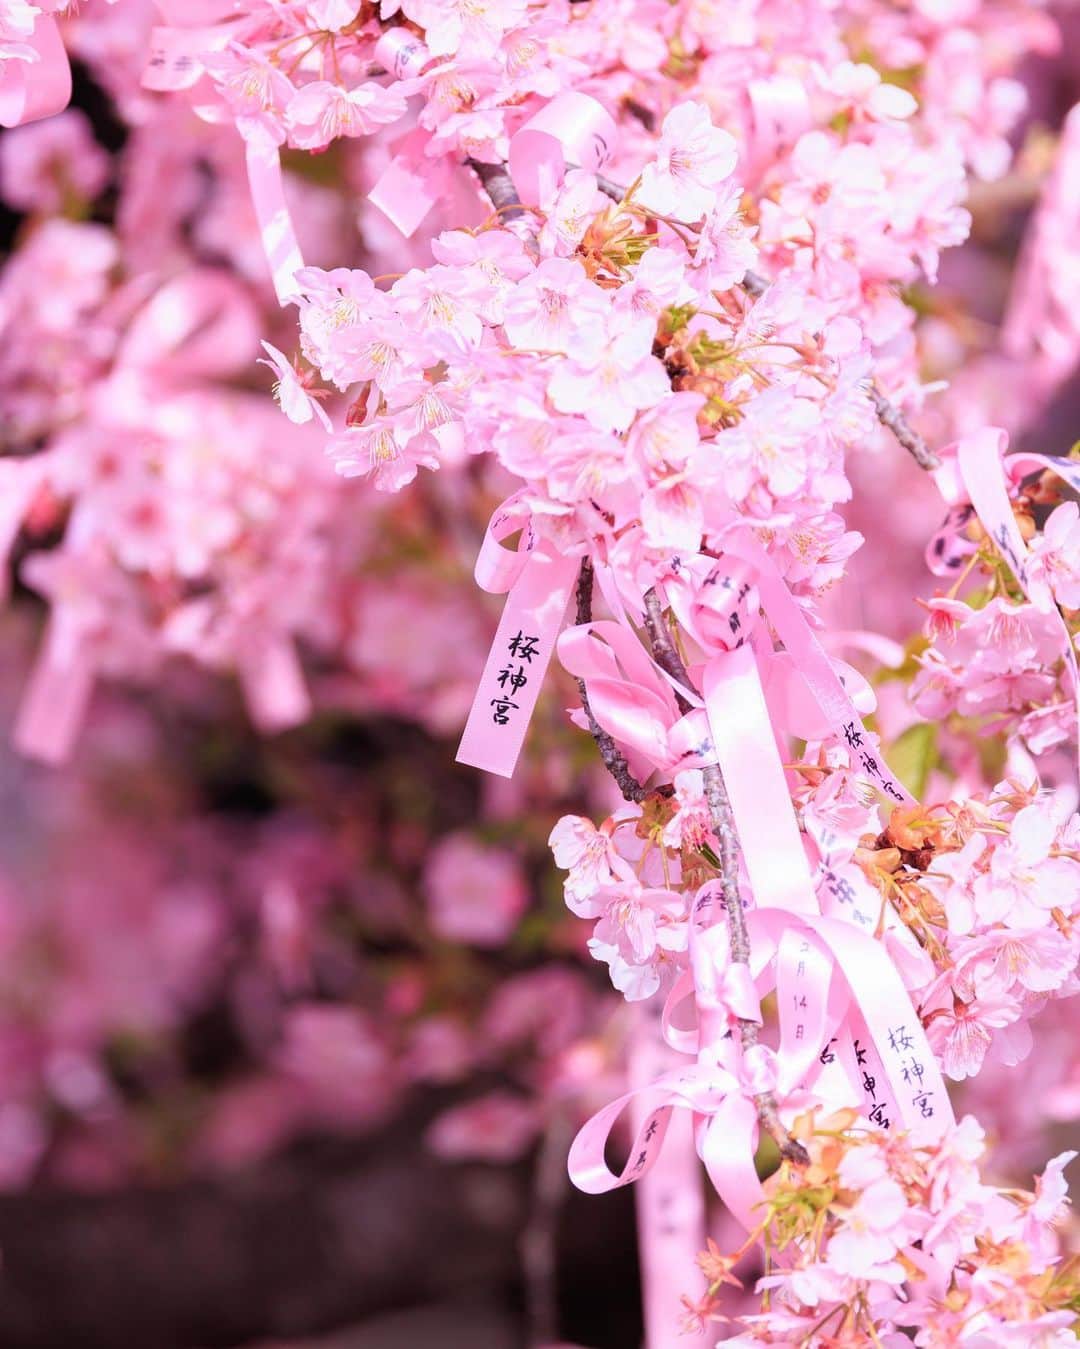 SHOCK EYEのインスタグラム：「河津桜は皆がよく知るソメイヨシノよりもピンクがかった桜🌸  普通の桜より、早い時期に咲くので、なんだか春の訪れを感じせてくれる花＾＾  昨日、 桜新町にある桜神宮に行ったんだけど、本殿の両脇で、この河津桜が今年も綺麗に咲いてた⛩🌸  本当に綺麗だった。  社紋も桜の花びらだし、なんだか可愛らしい神社さん✨  思えばさ、、 カメラをはじめて、 俺も変わったなあ、、って思う😊  以前よりも季節を感じようとするようになったり、 こうして花の美しさに目を向けるようになった。  前よりもさらに世界をカラフルに見るようになった。  思い返してみれば、歌を始めたときと全く一緒だ。  歌詞の世界観は、 常に世の中を観察するところから始まってる。 何気ない日常の一片を、、 たいそうな物語にして伝える。  あの日の悲しみや苦しみに、光を当ててあげる作業。 あの日の幸せを忘れないように、 楽しかった日への感謝を忘れないようにする作業だ。  つまらなく思える毎日だって、 きっと感じ方次第で無限のストーリーを紡ぎ出せると、、 俺は音楽と出会って、そして写真と出会って確信した😊  世界を賑やかにするのも、 世界の彩度を上げるのも、  きっと自分次第なんだ＾＾  君にはどう聞こえてる？ 君にはどう見えてる？  #桜神宮 #河津桜 #sakurajingu #cherryblossom #shrine #japantravel #japantrip #canon #canonR5 #beautifuldestinations #discoverjapan #discoverearth #voyaged #awesome_photographers #IamATraveler #wonderful_places #japanphoto #japanphotography #japan_of_insta #livingonearth #theglobewanderer」